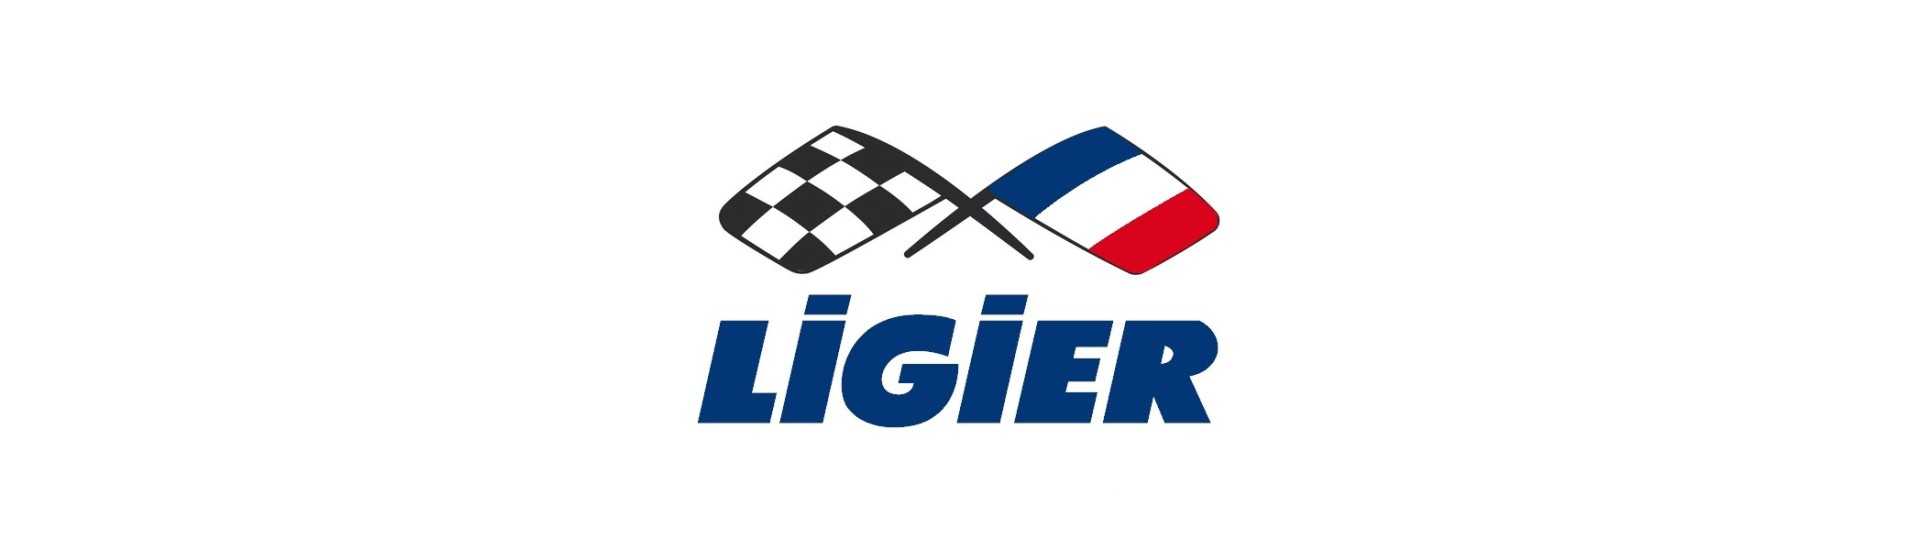 Cardan till bästa pris för bil utan tillstånd Ligier